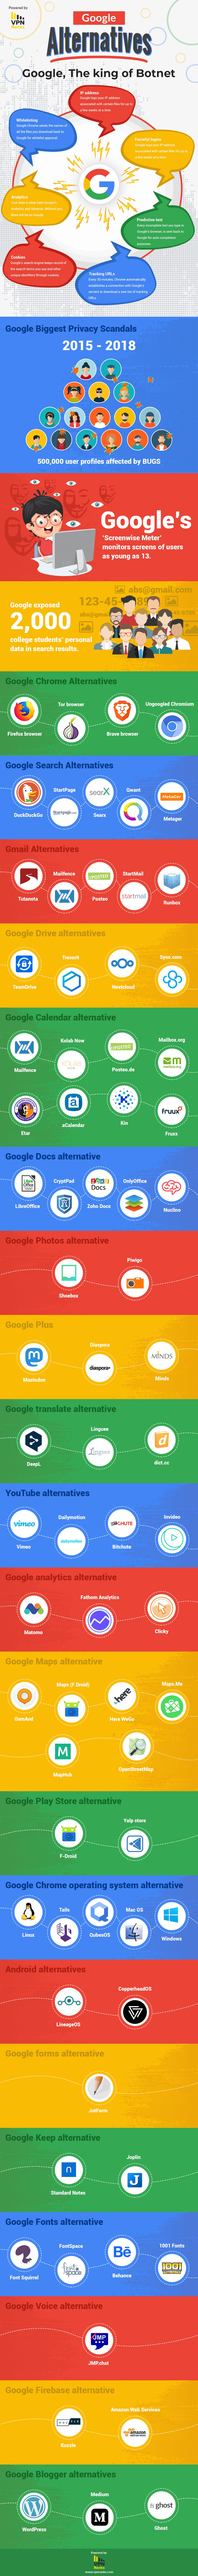 Google-alternatives